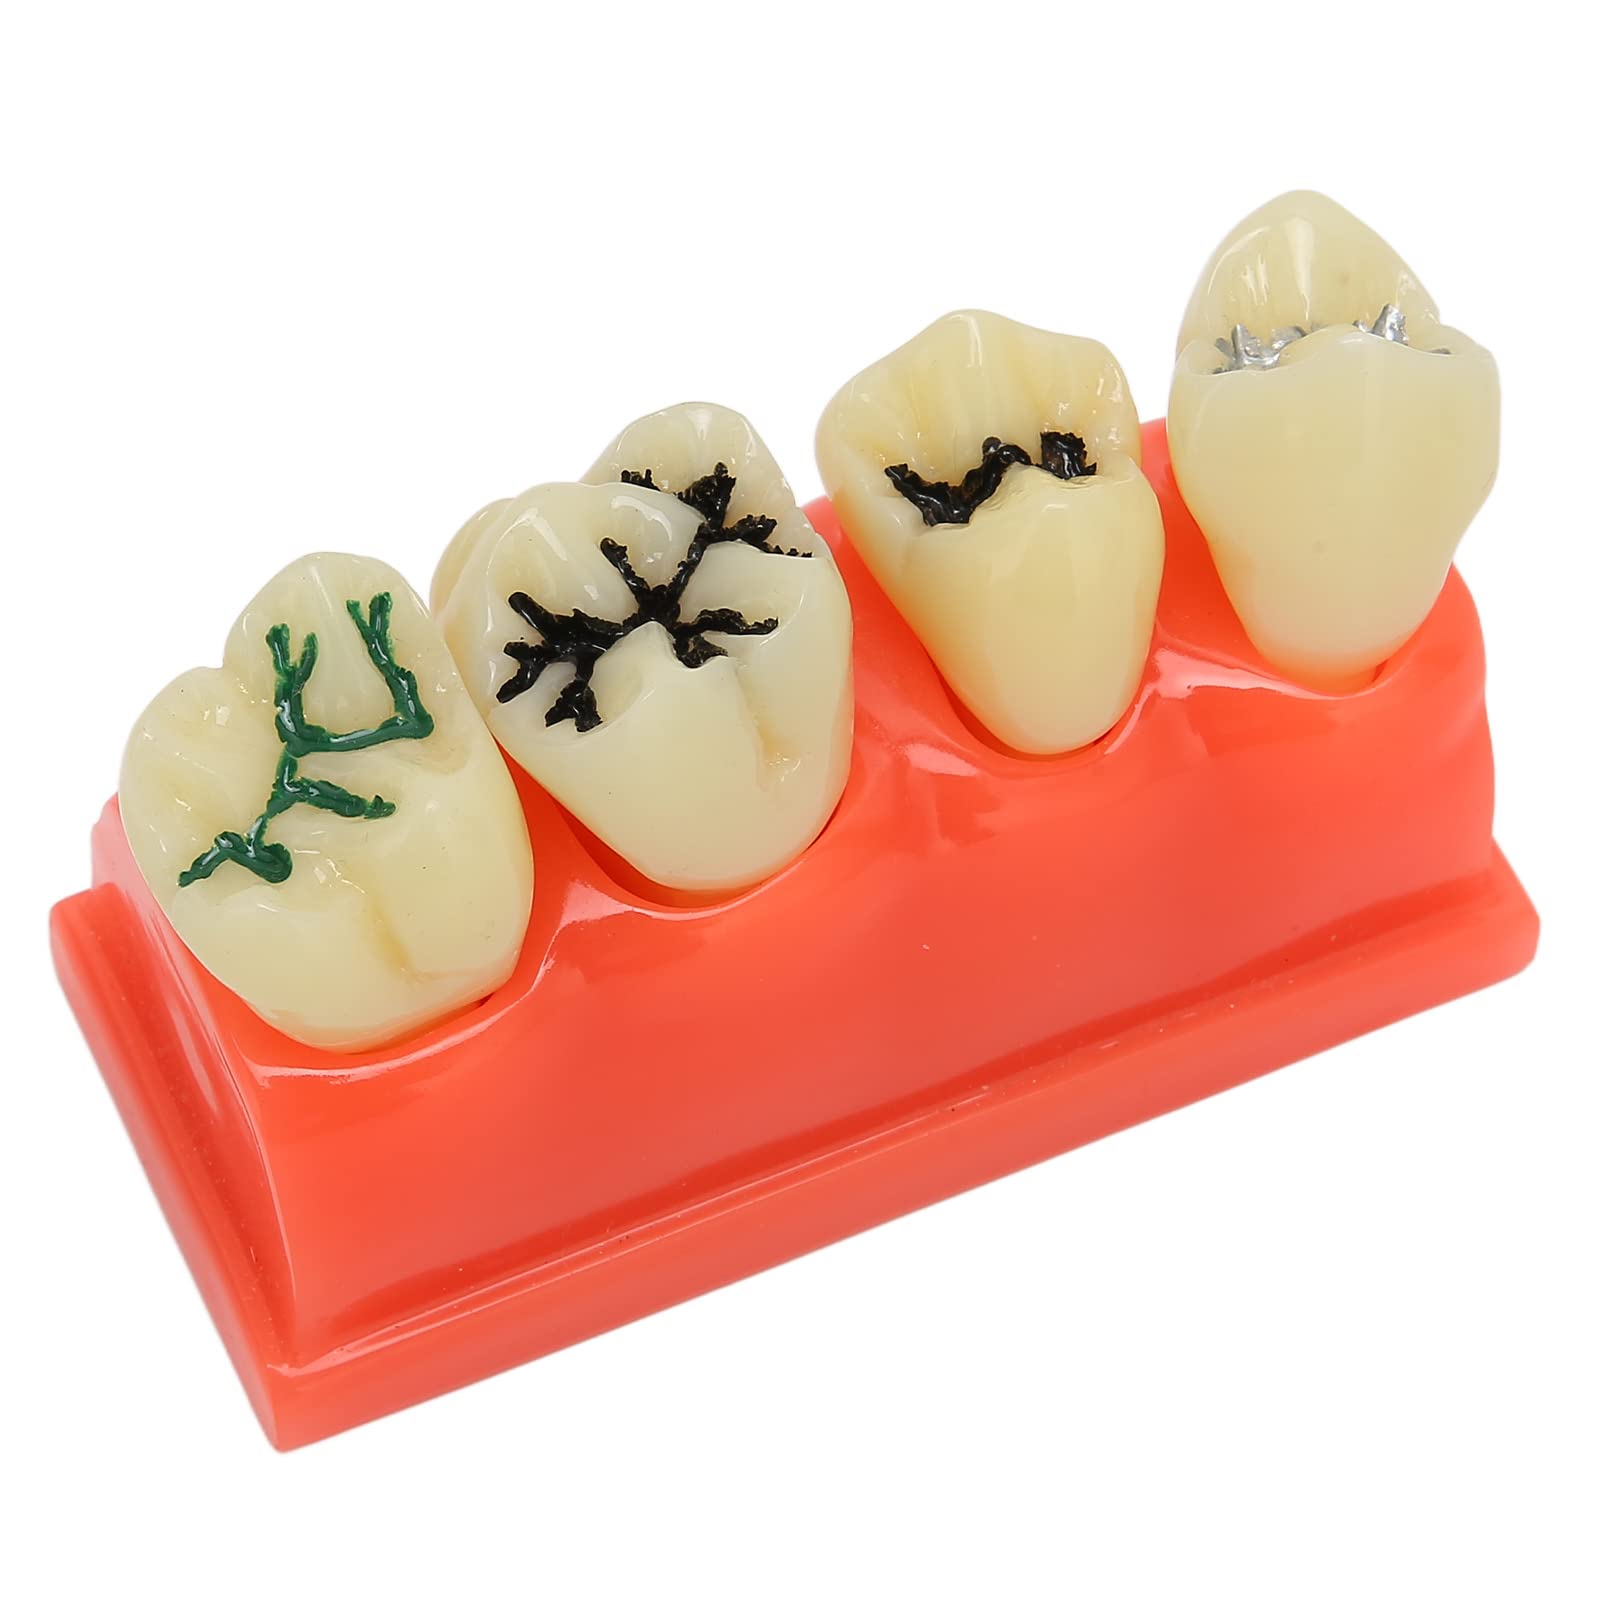 Modell für verfallene Zähne, Mundpflege-Lernmodell für Zahnkaries, lehrreich für Zahnkliniken zur Demonstration